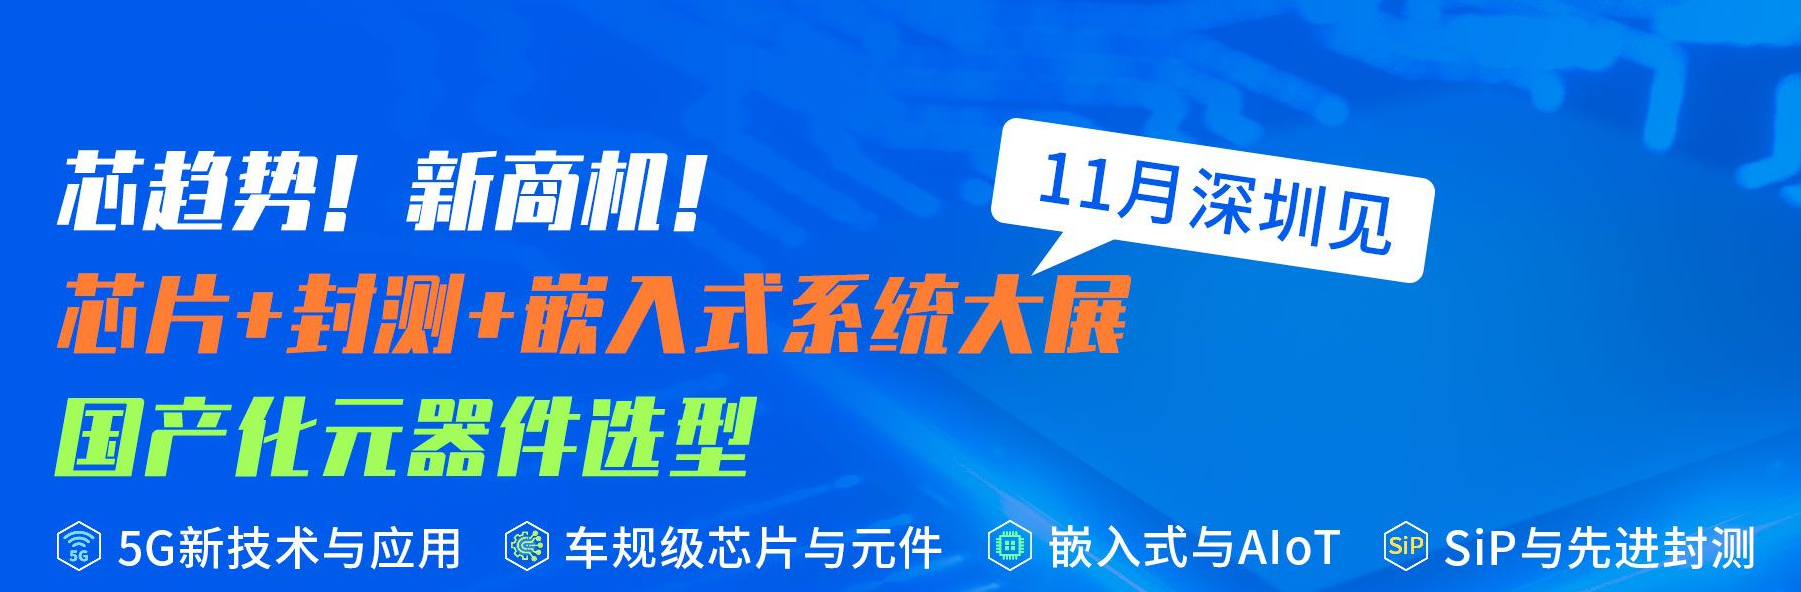 宇阳科技即将参加2022深圳国际电子展暨嵌入式系统展